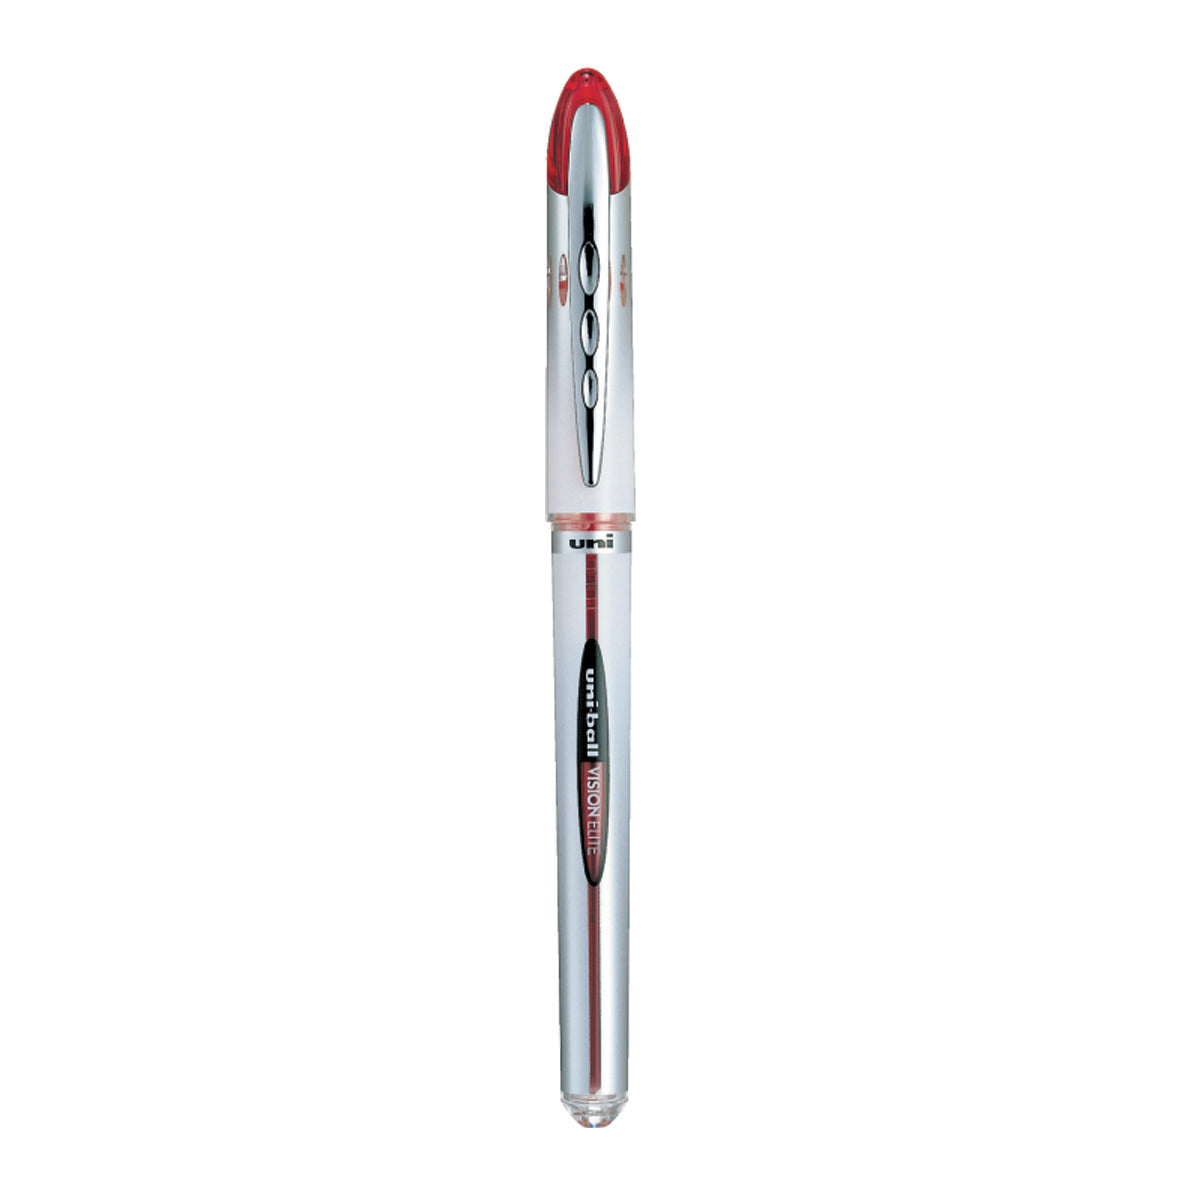 UniBall Vision Elite Roller Pen UB200